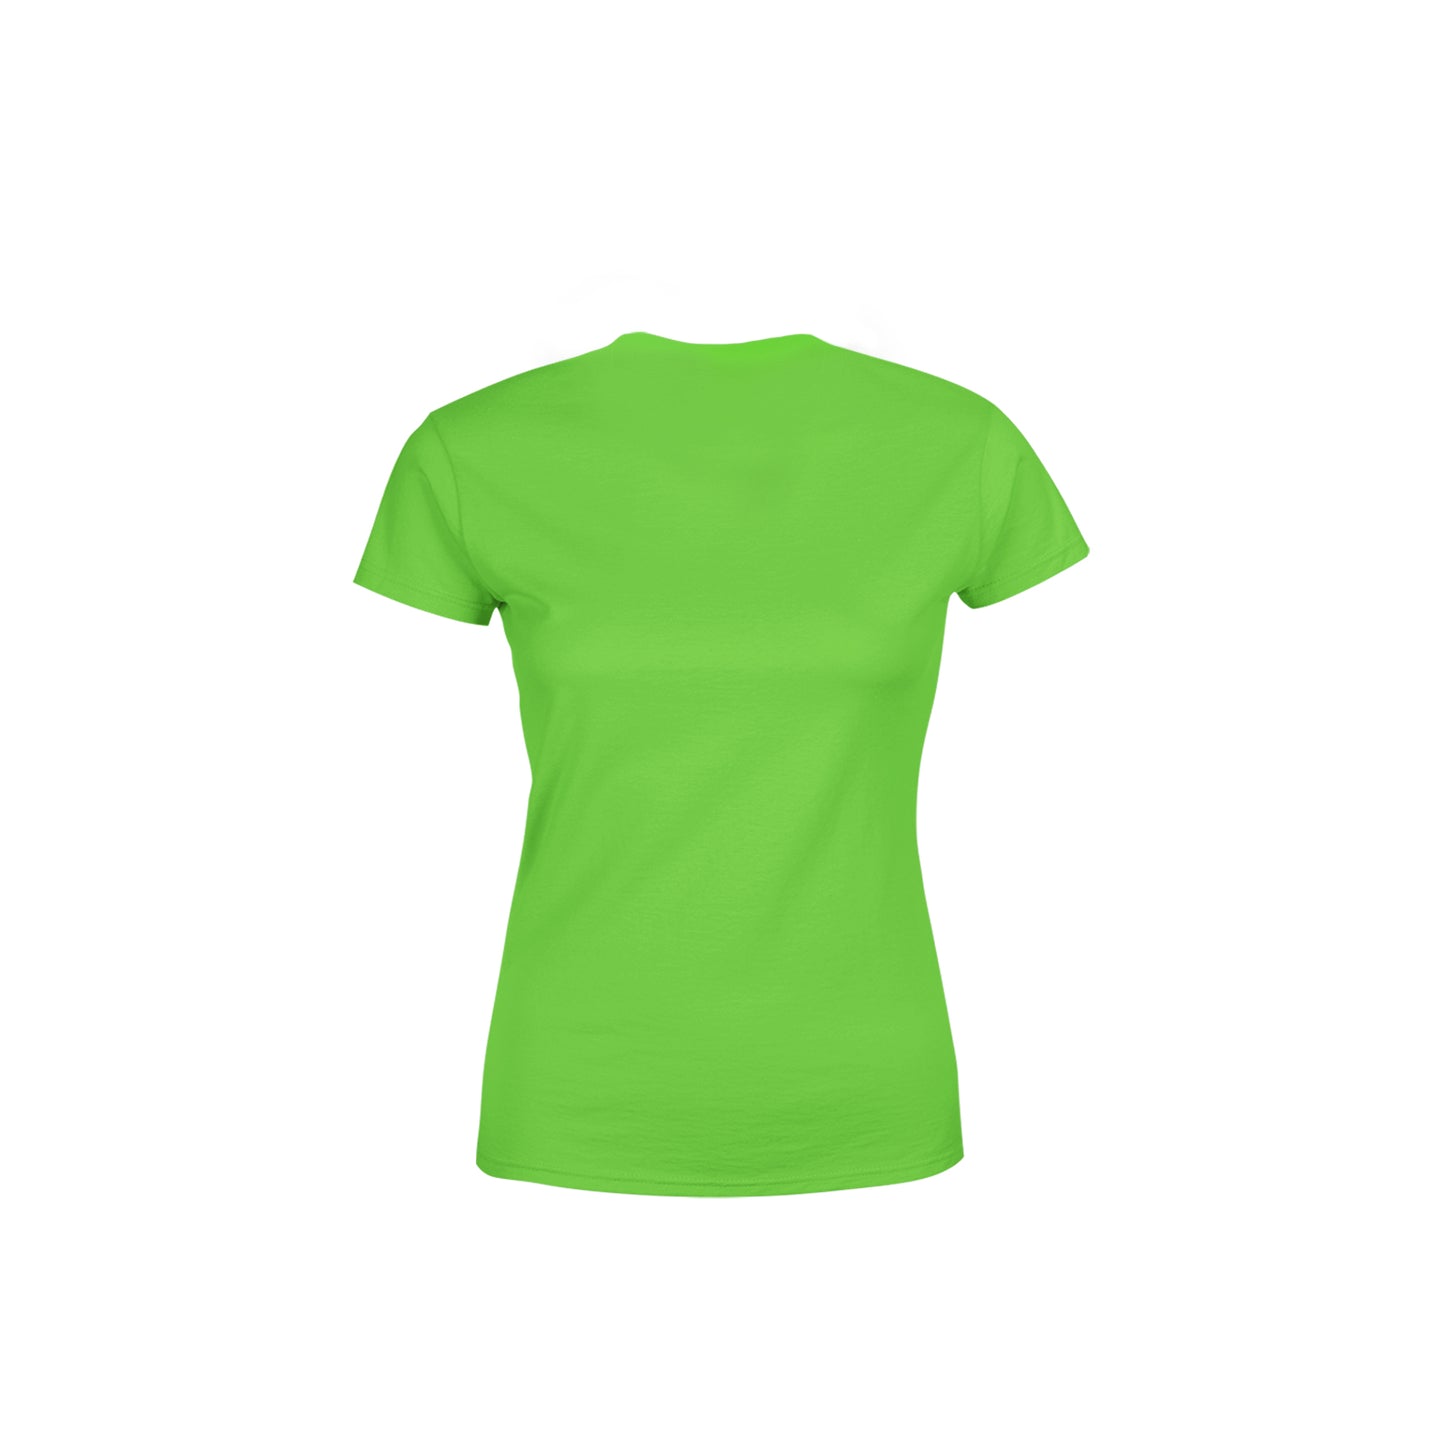 48 Number Women's T-Shirt (Liril Green)